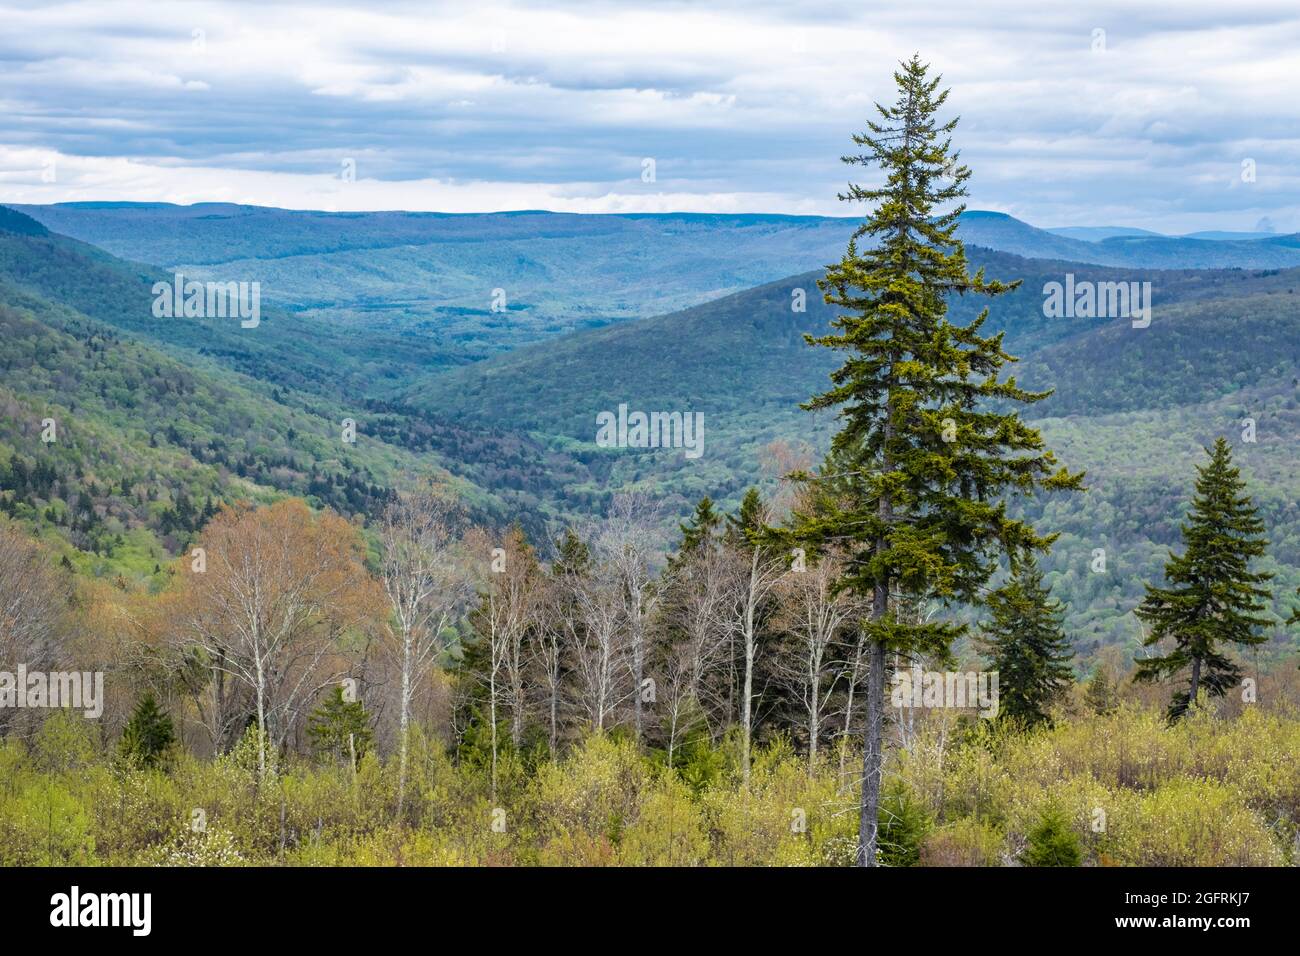 West Virginia Scenic Overlook, State Highway 150, montrant une nouvelle croissance après la coupe claire de la forêt. Fin du printemps. Banque D'Images